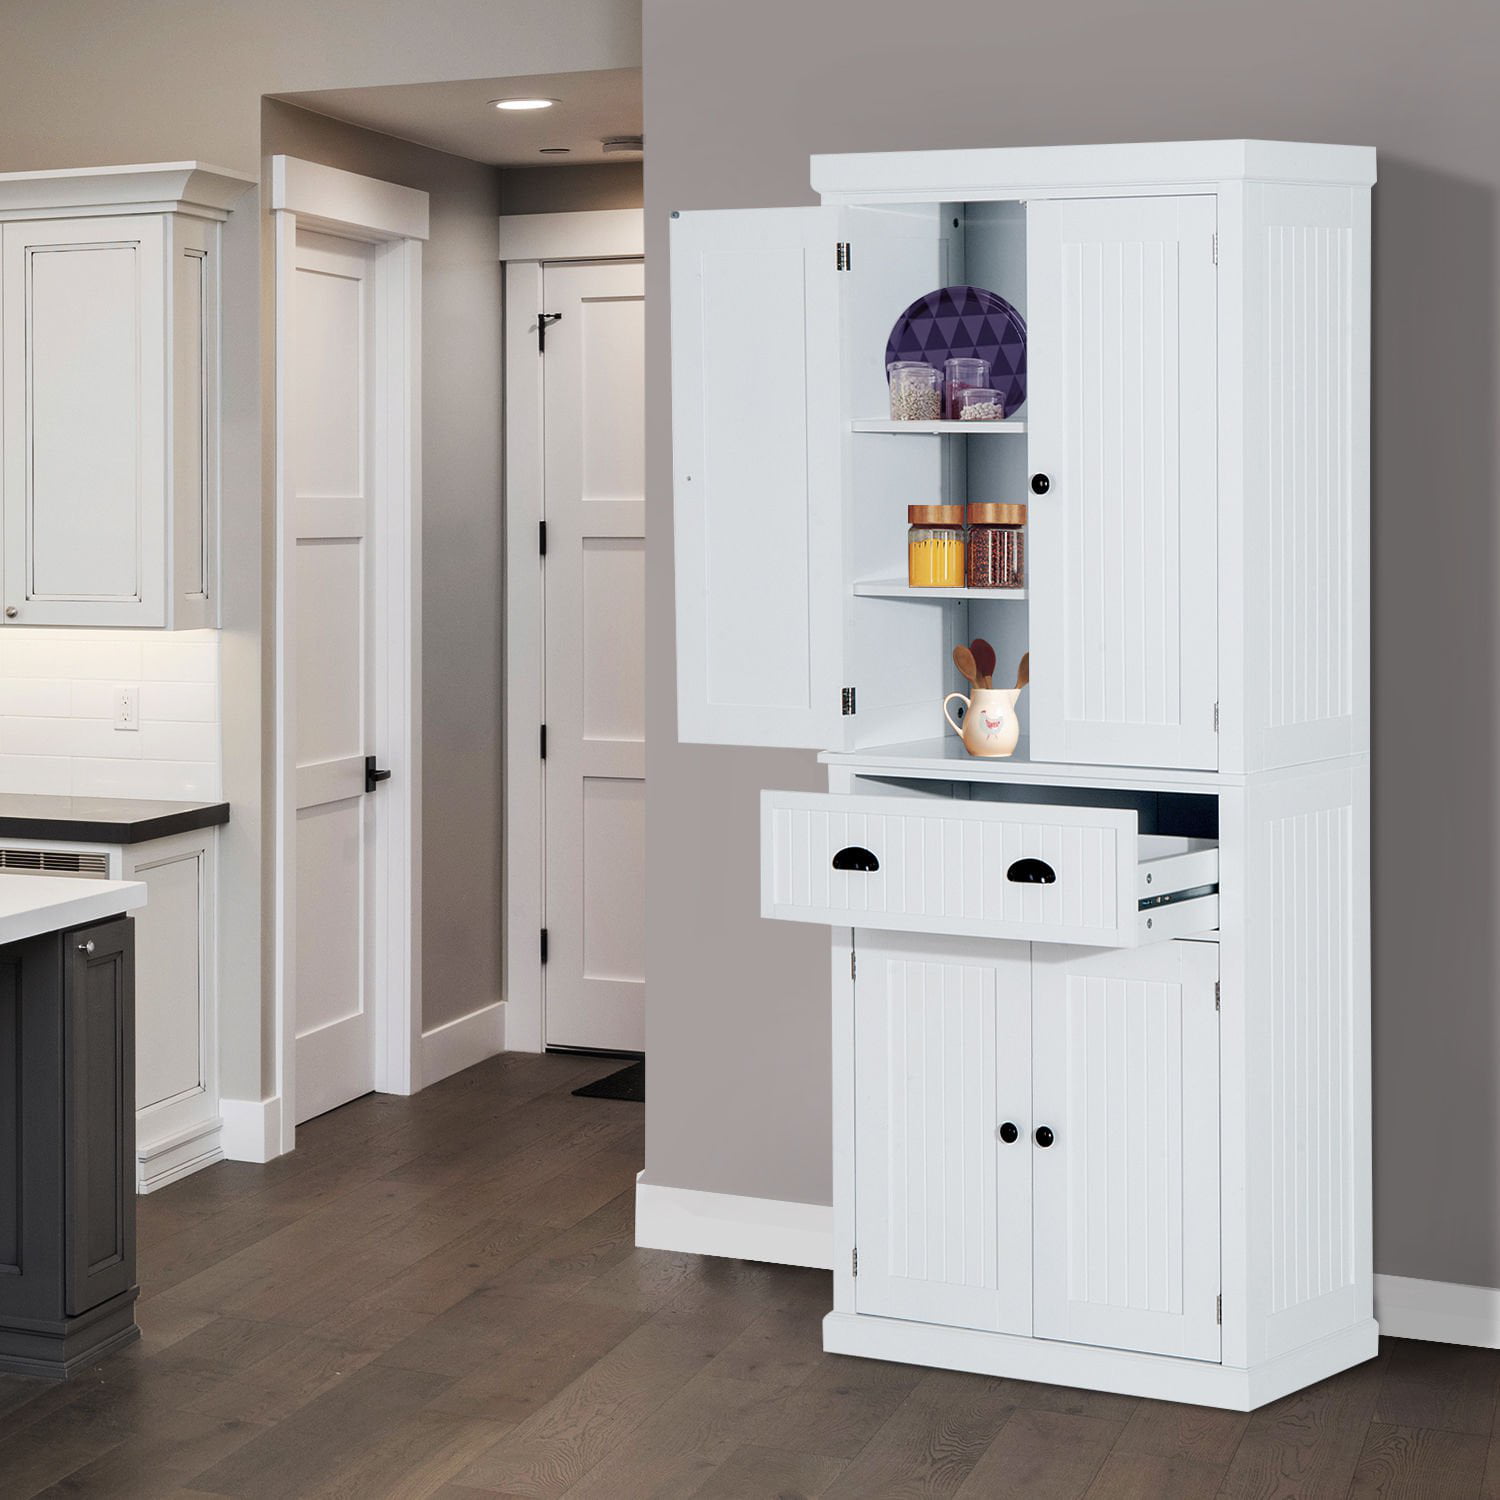 Details about   #1 Tall Storage Cabinet Kitchen Cupboard Food Storage Organizer Shelf Wood White 